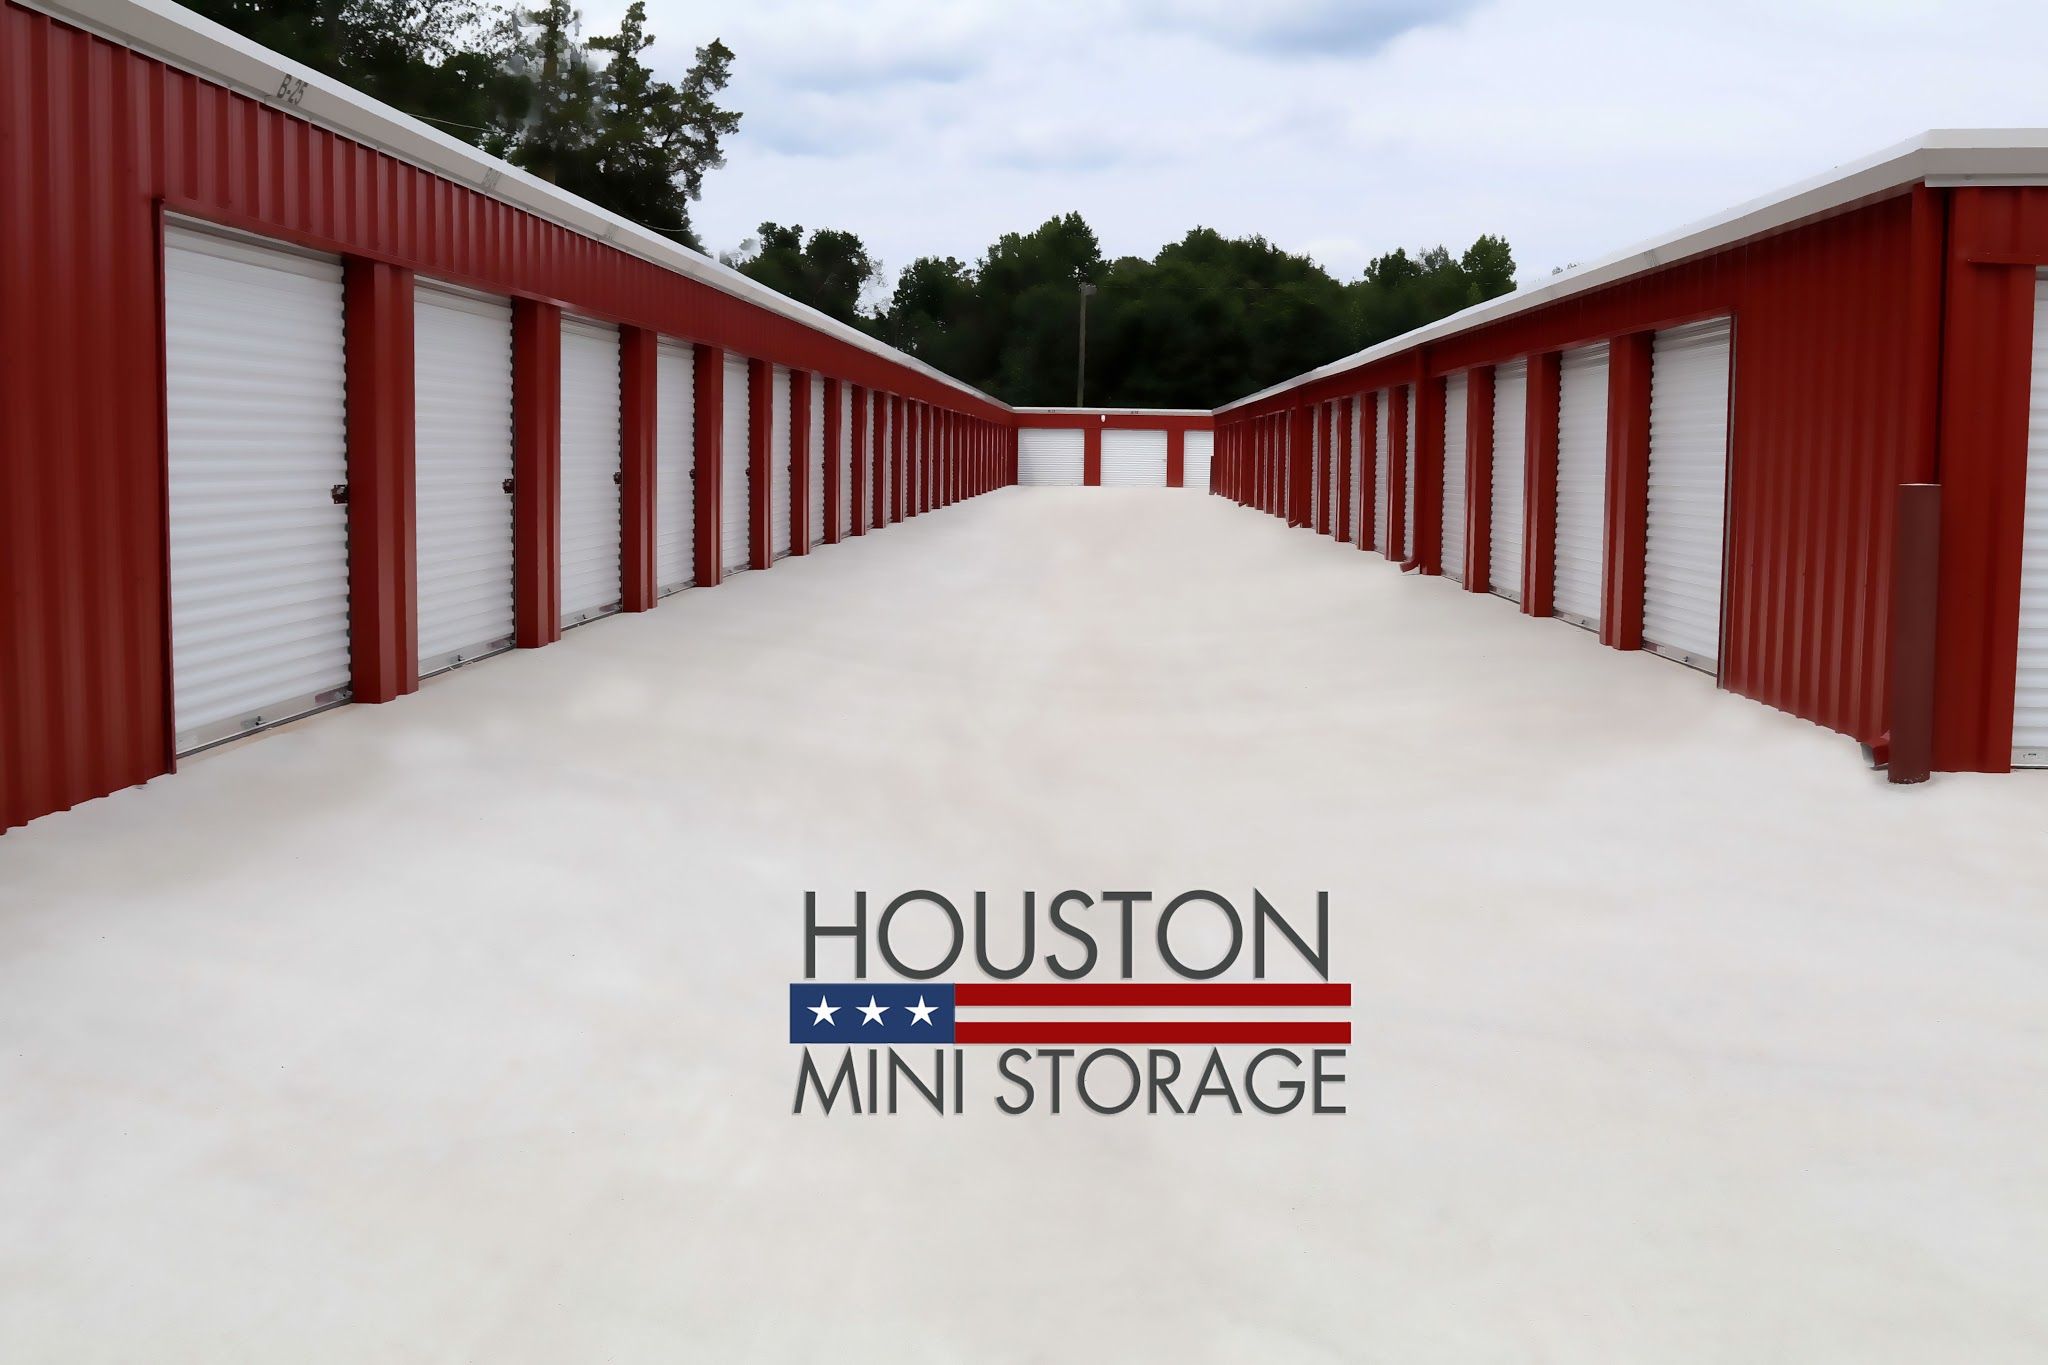 Houston Mini Storage